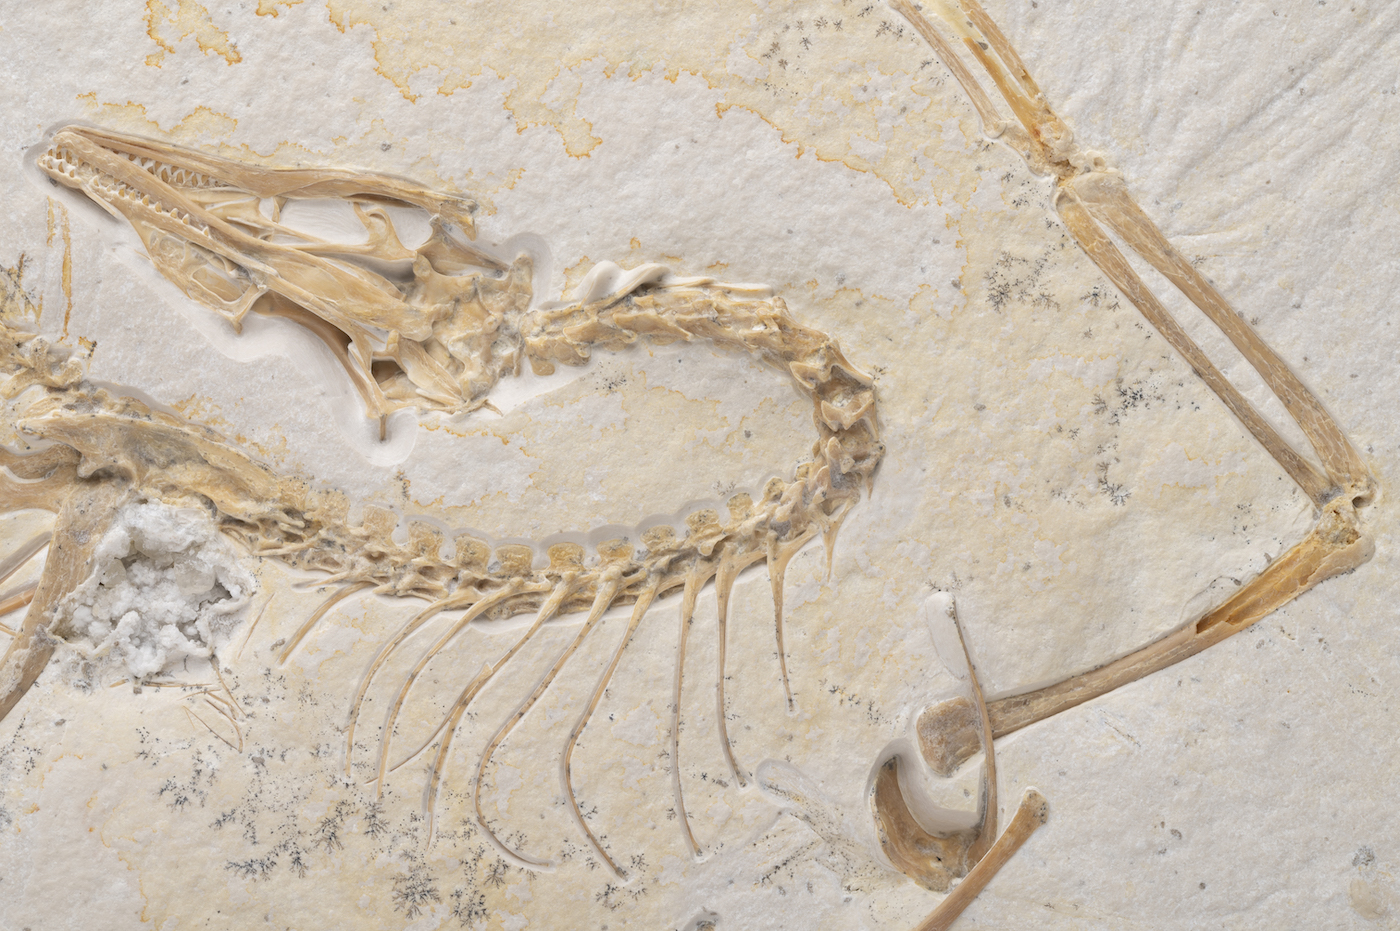 A skeleton of a bird-like dinosaur, preserved inside a stone slab.